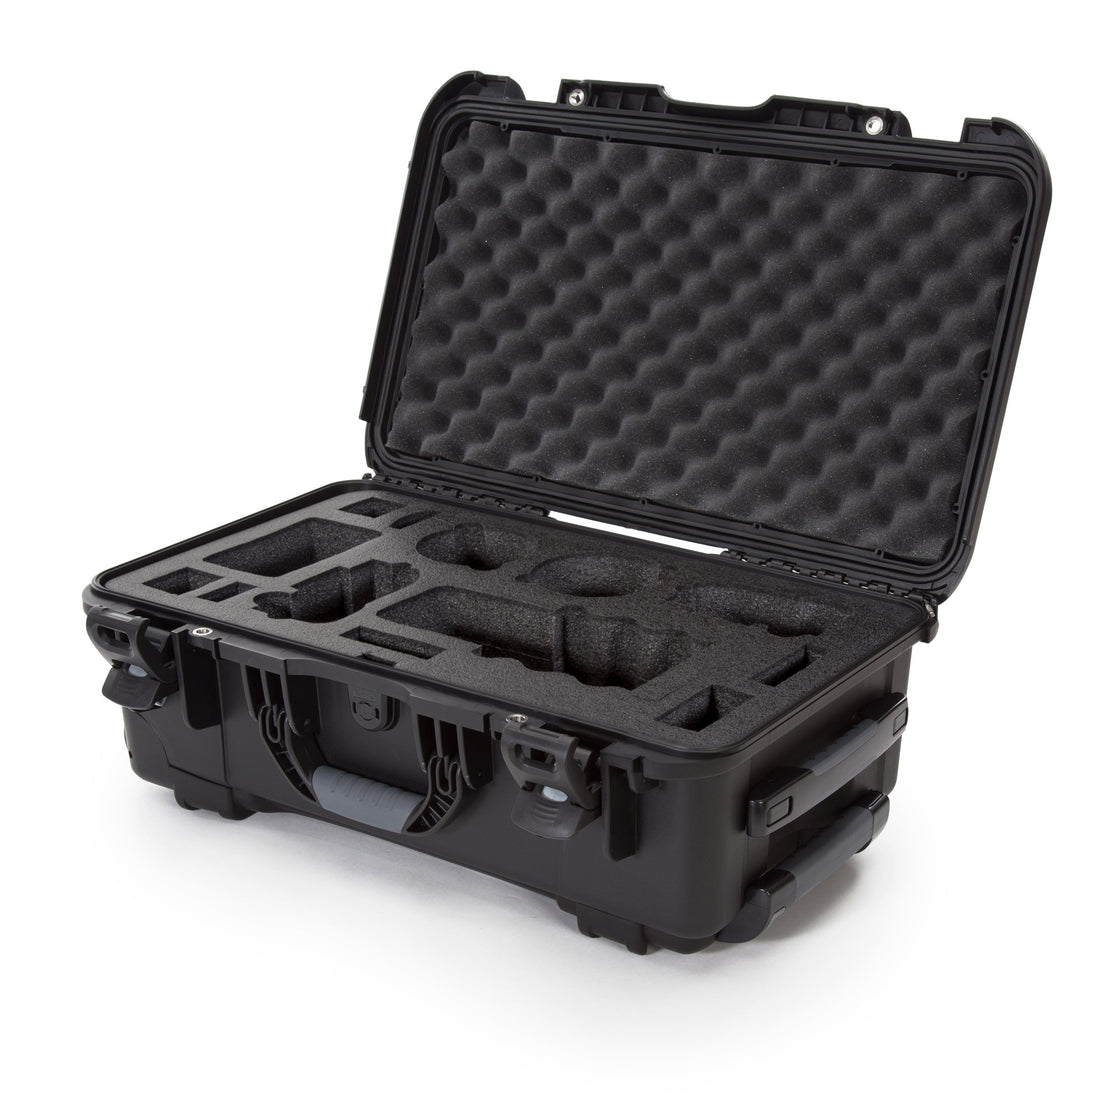 nanuk 933 dji drone waterproof hard case with custom foam insert for the phantom 4 pro 4 pro 4 pro 2 0 4 rtk black